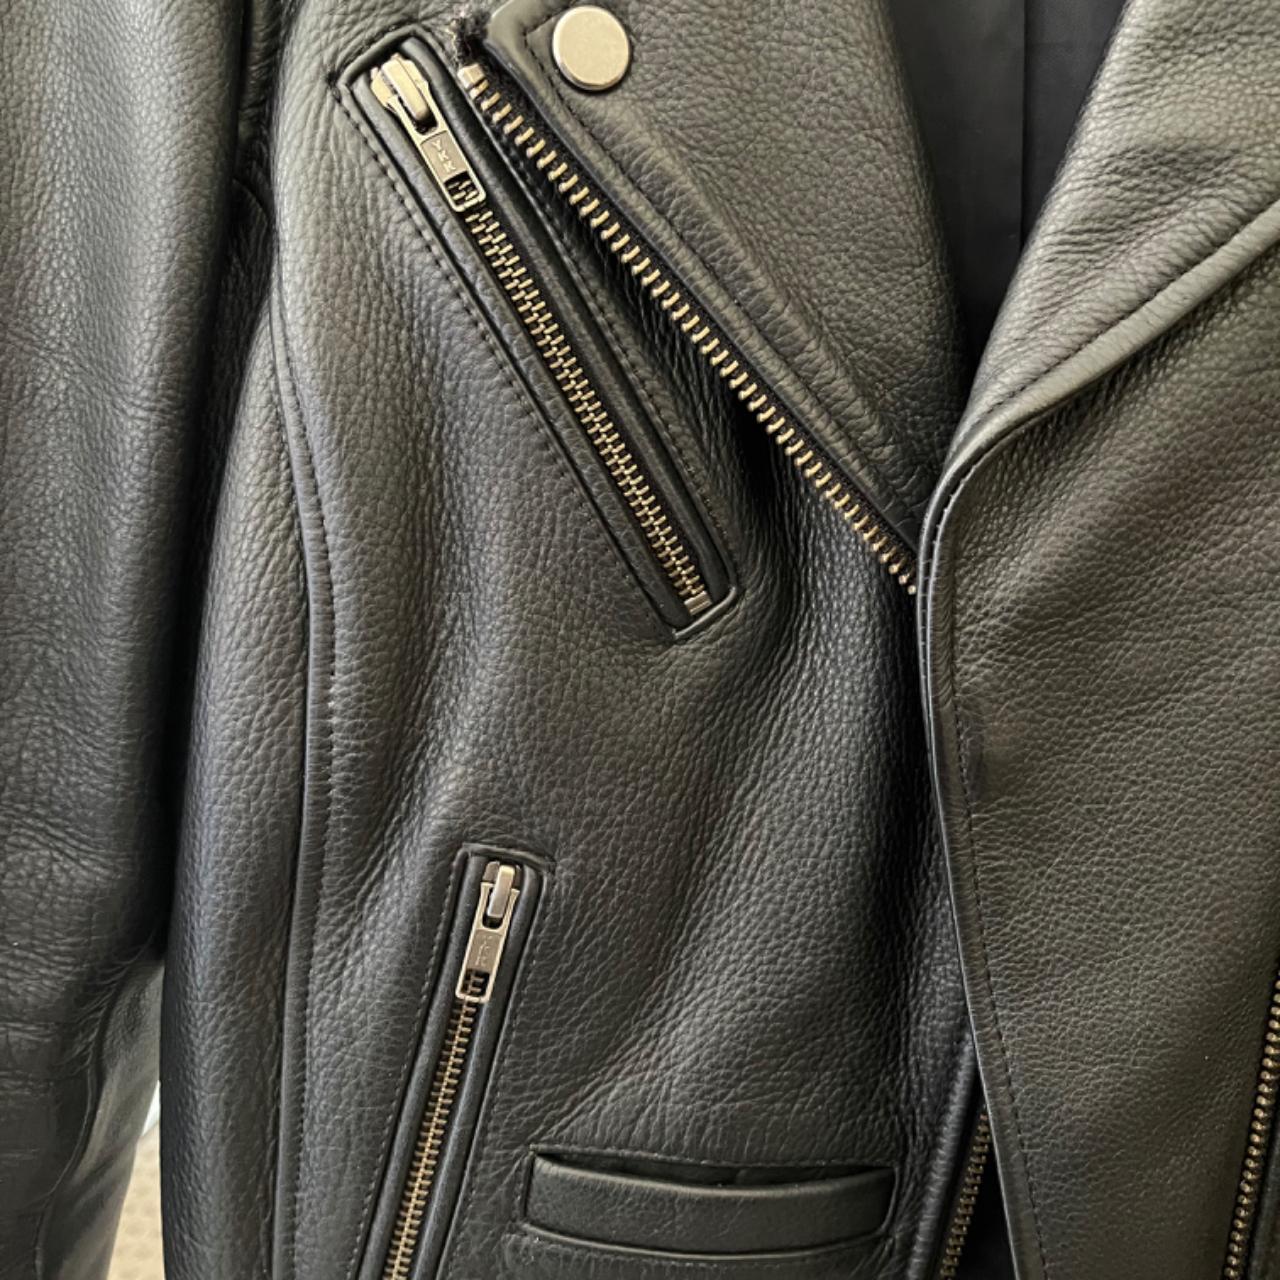 Neuw Berlin Leather Jacket, genuine leather biker... - Depop